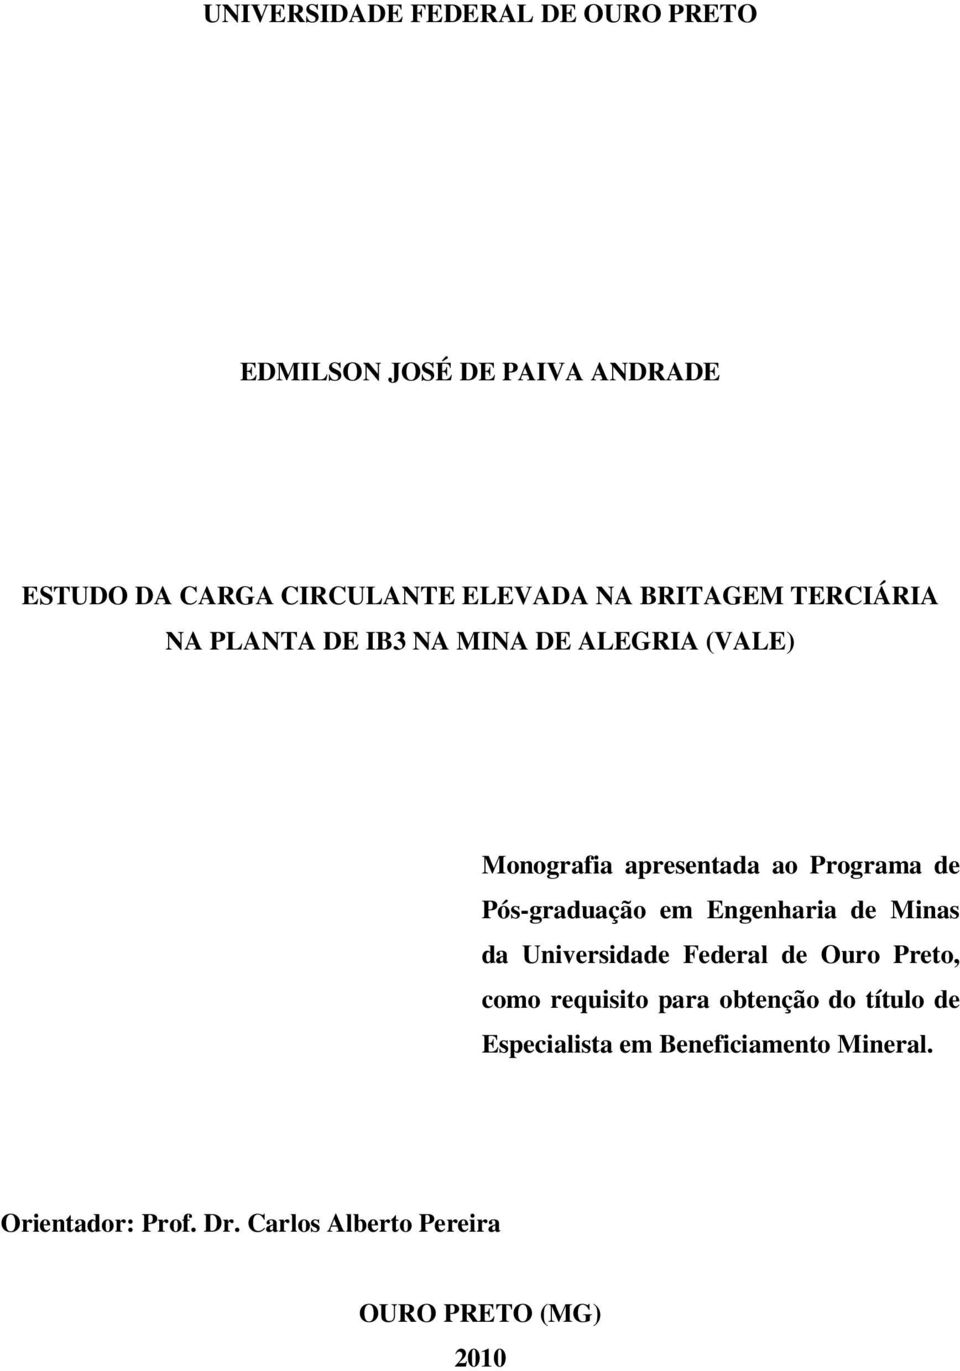 Pós-graduação em Engenharia de Minas da Universidade Federal de Ouro Preto, como requisito para obtenção